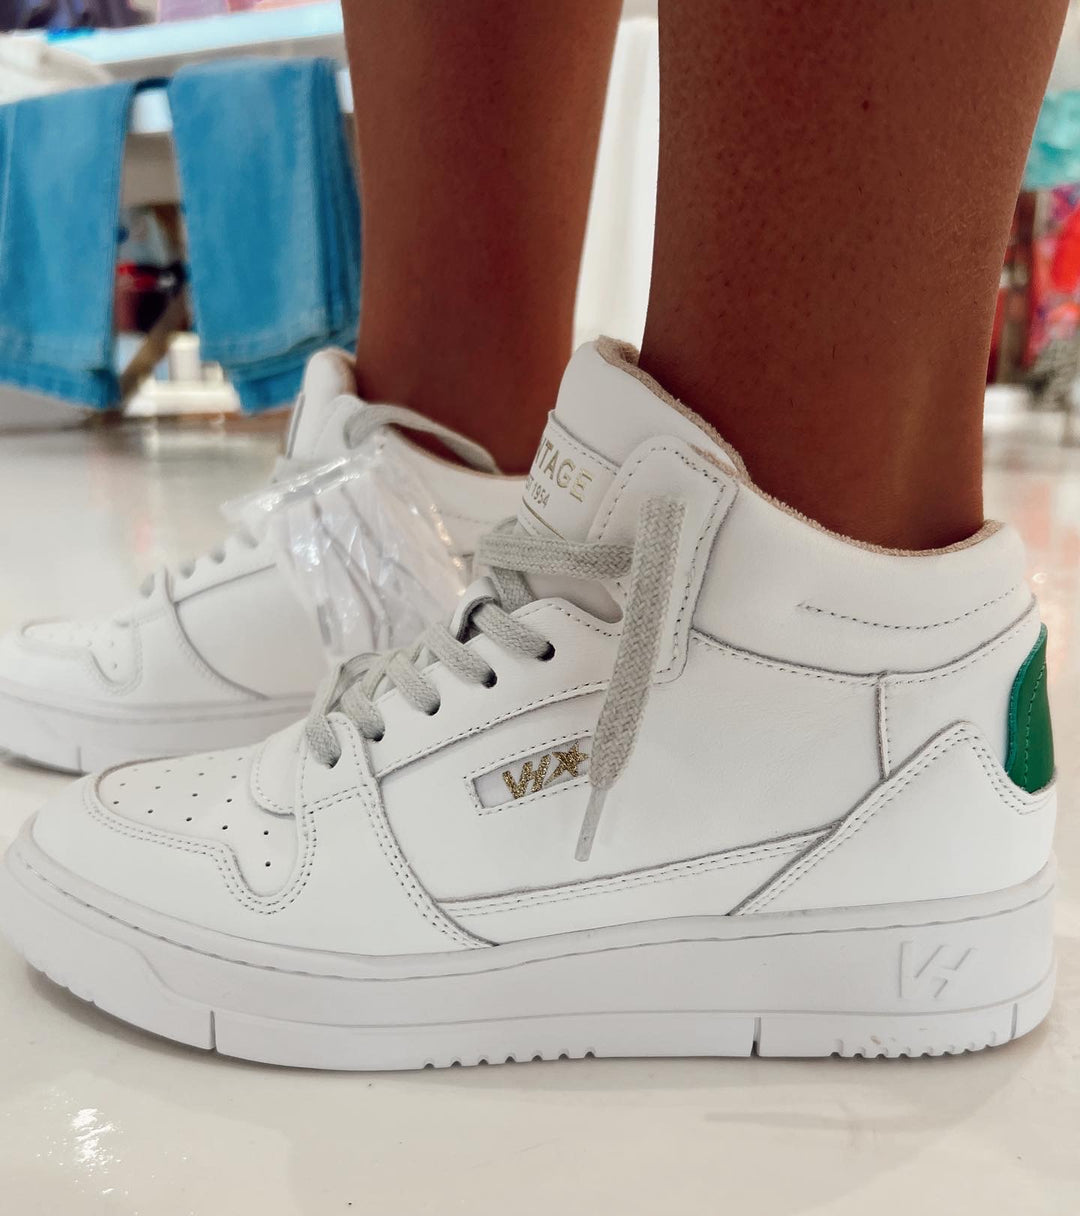 VH Celeste 4 White/Green Mid Sneakers